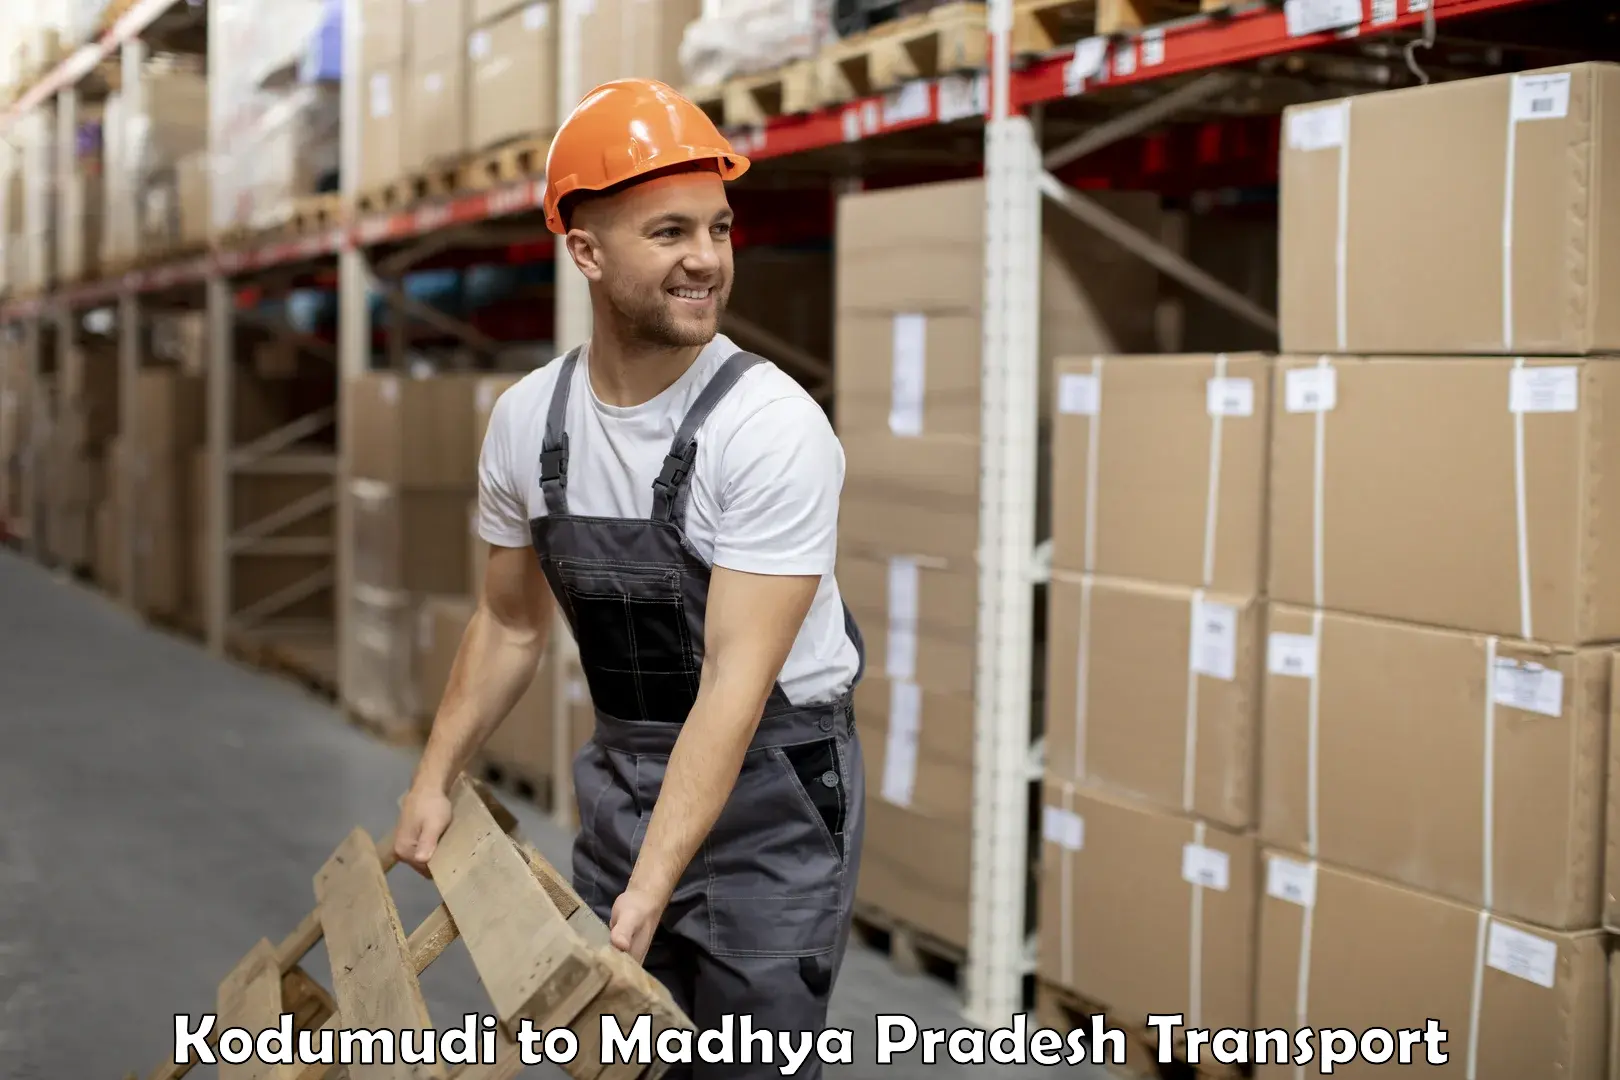 Daily parcel service transport Kodumudi to Niwari